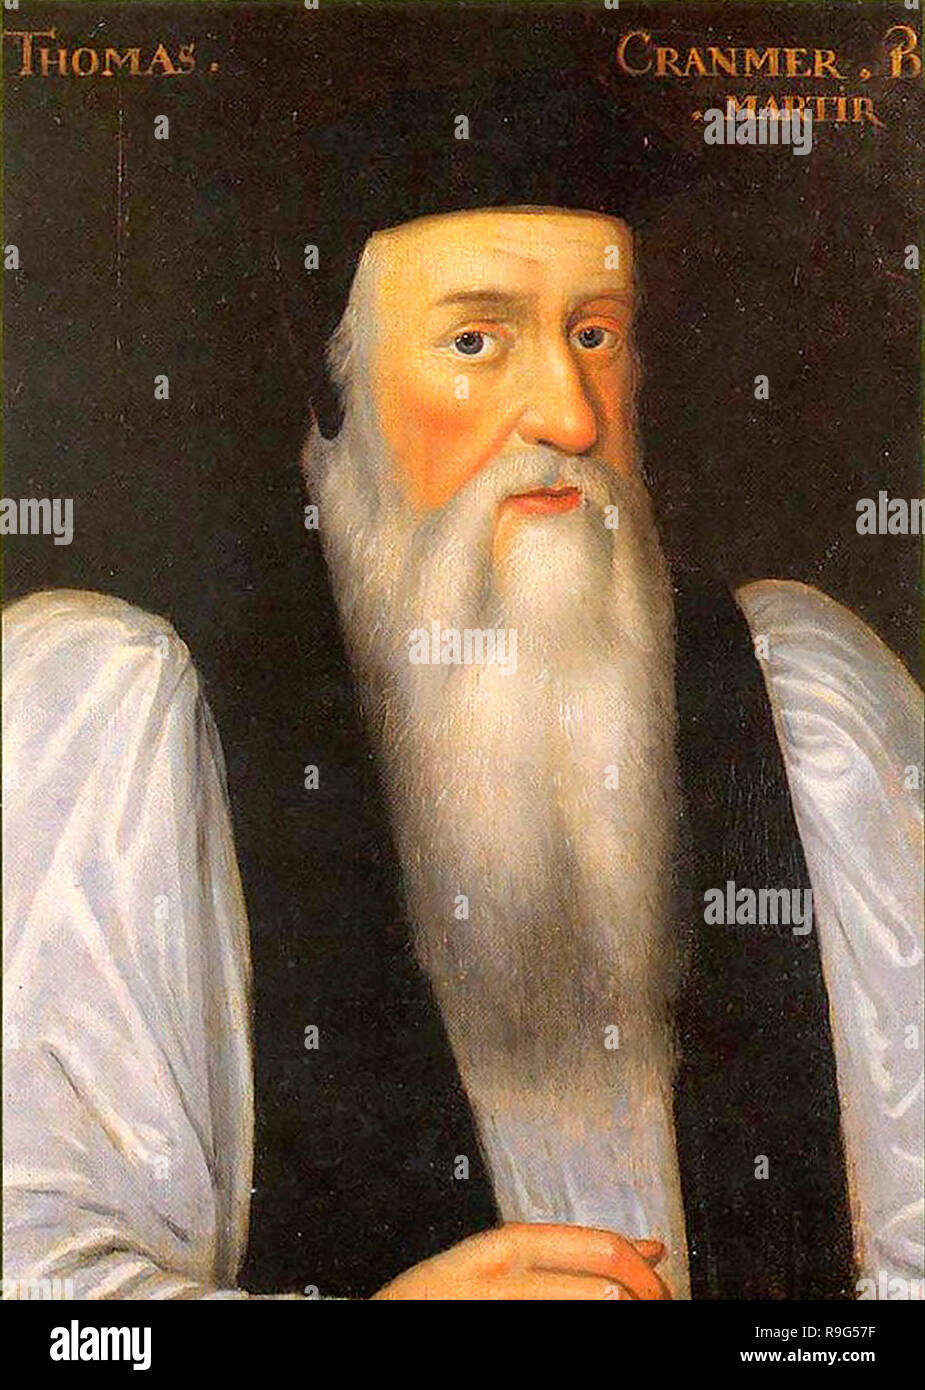 Thomas Cranmer. Cranmer, Erzbischof von Canterbury von 1533 bis 1555, war der Architekt der englischen Reformation. Ein Porträt von Gerlach Flicke zeigt ihn ohne Bart 1546, so dass dieser Malerei ihn spät im Leben darstellt. Stockfoto